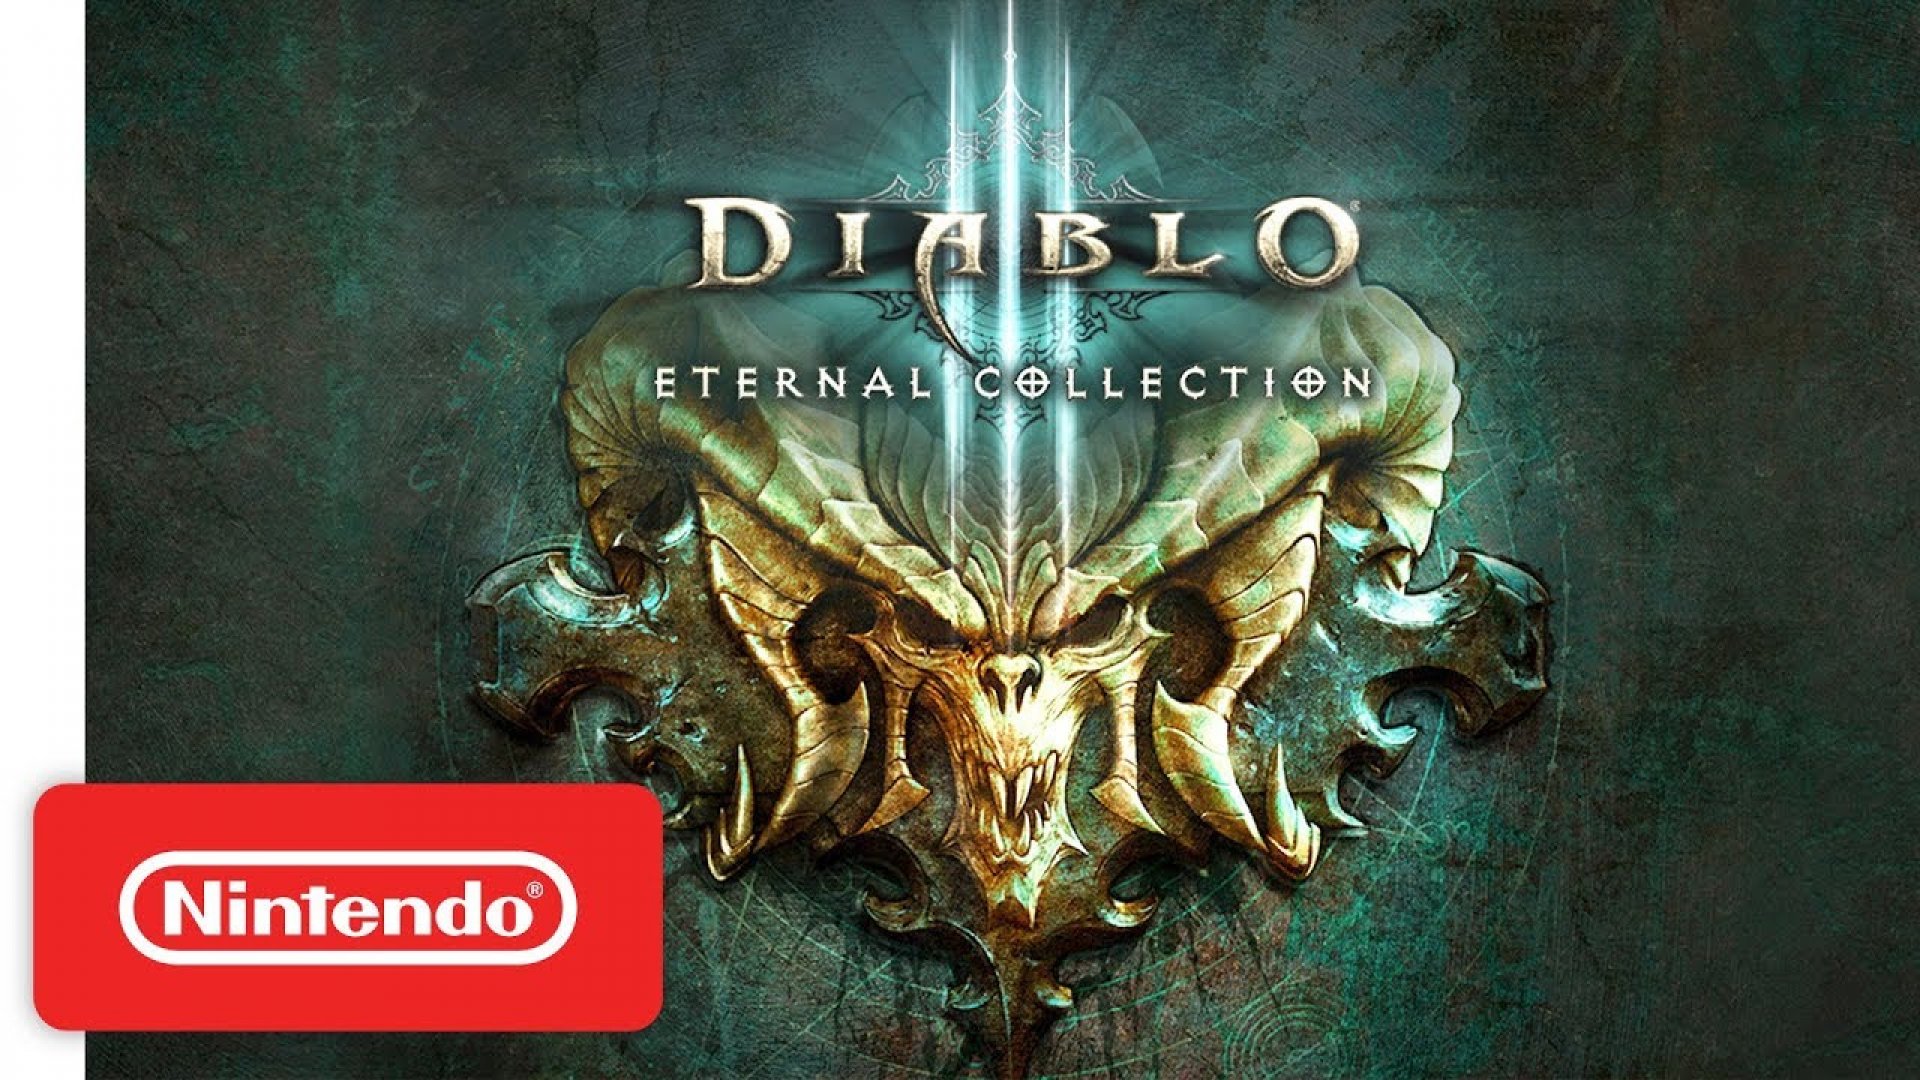 Diablo 3 nintendo. Diablo 3 Eternal collection русская версия. Диабло 3 Eternal collection. Diablo III: Вечная коллекция. Диабло 3 Нинтендо свитч.